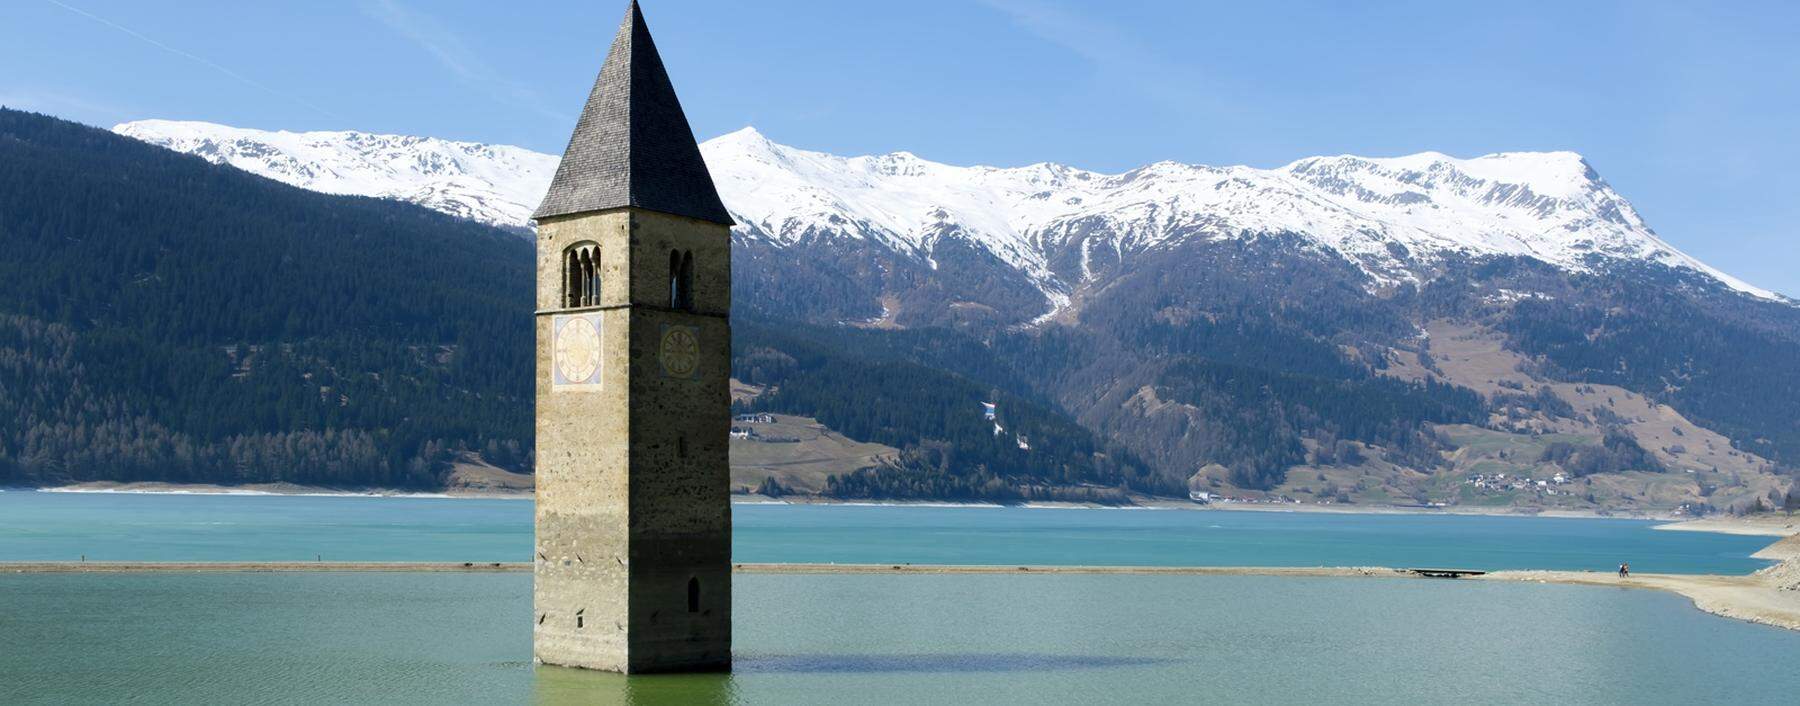 Der romanische Kirchturm von Graun wurde durch das Denkmalschutzgesetz bewahrt. Als einziger sichtbarer Rest des Dorfes. 